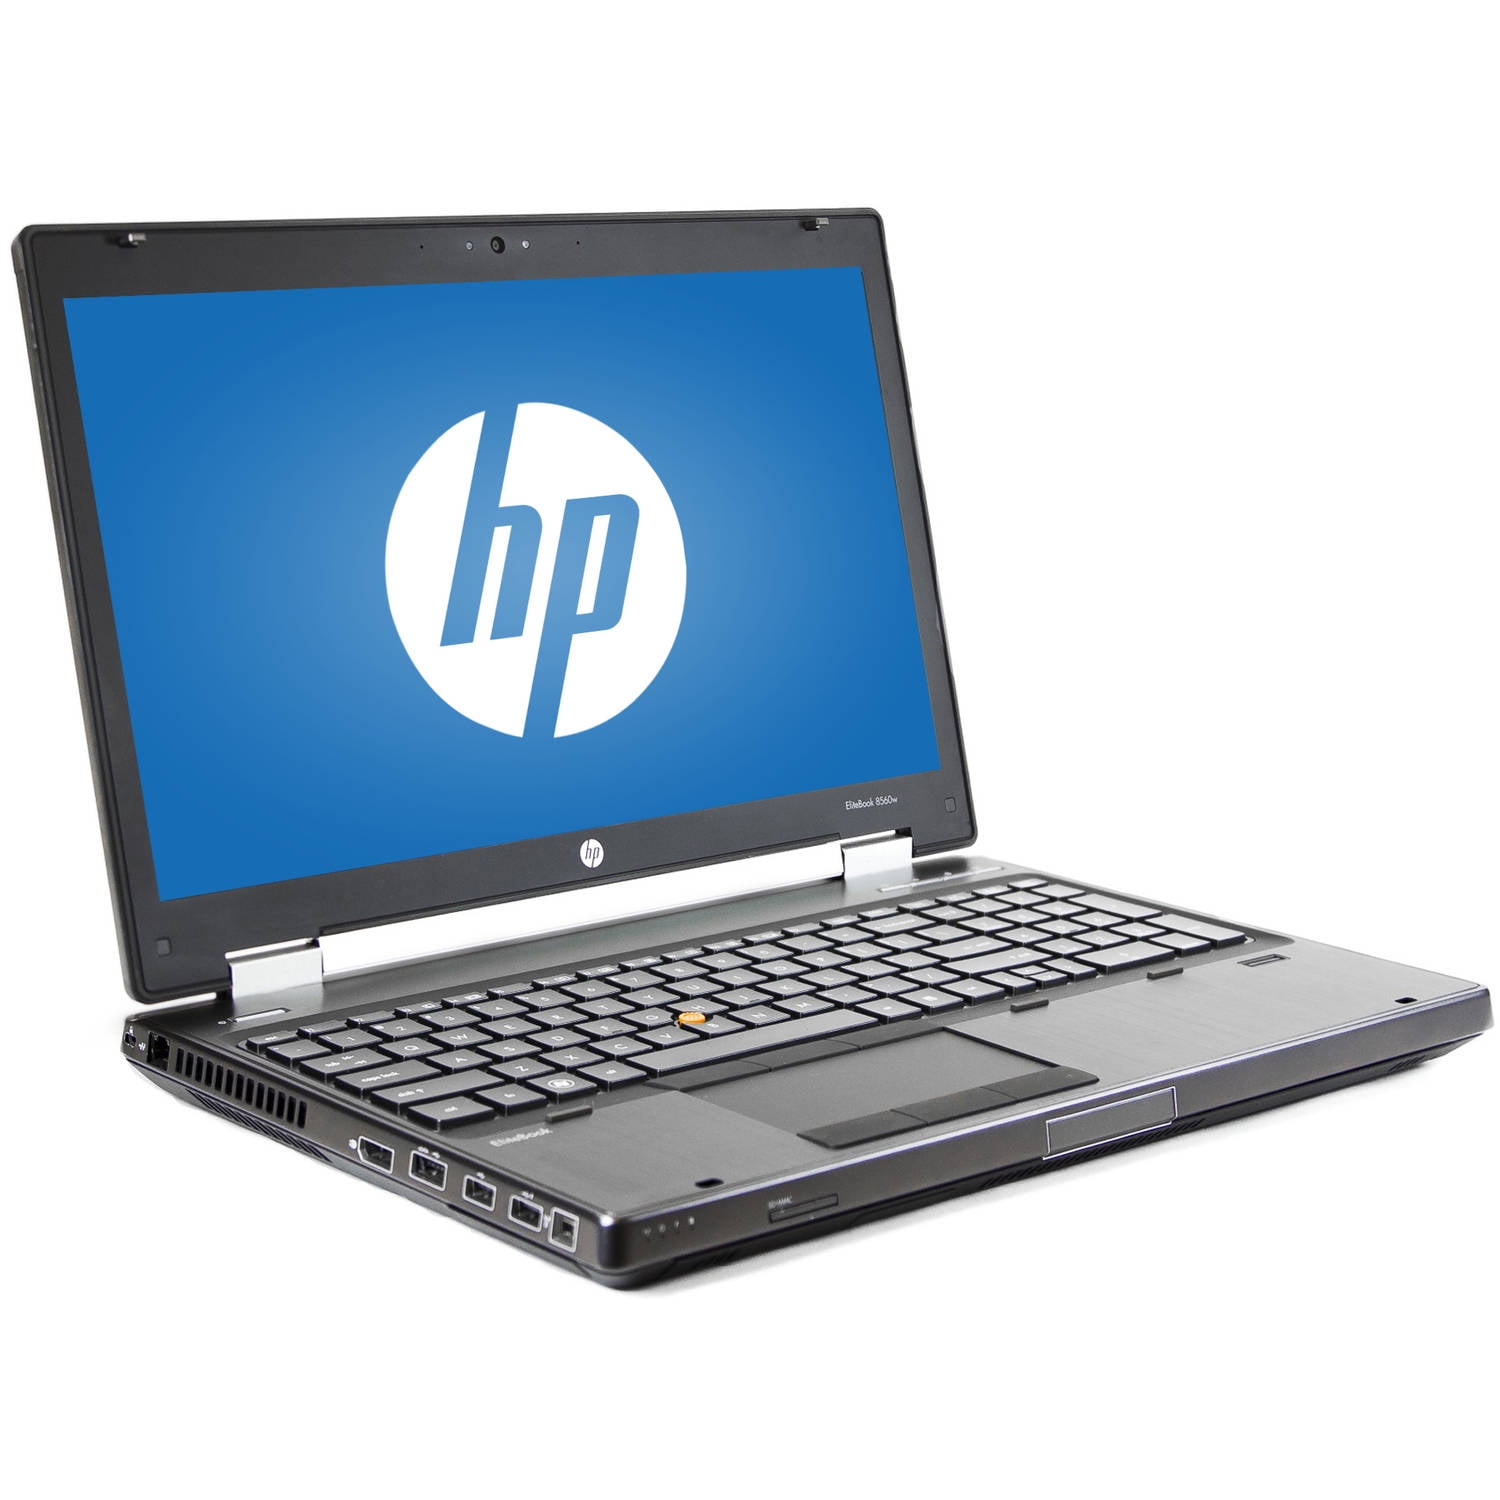 Used HP EliteBook 8560W 15.6" Laptop, 10 Intel i7-2820QM Processor, 8GB RAM, 500GB Hard Drive - Walmart.com